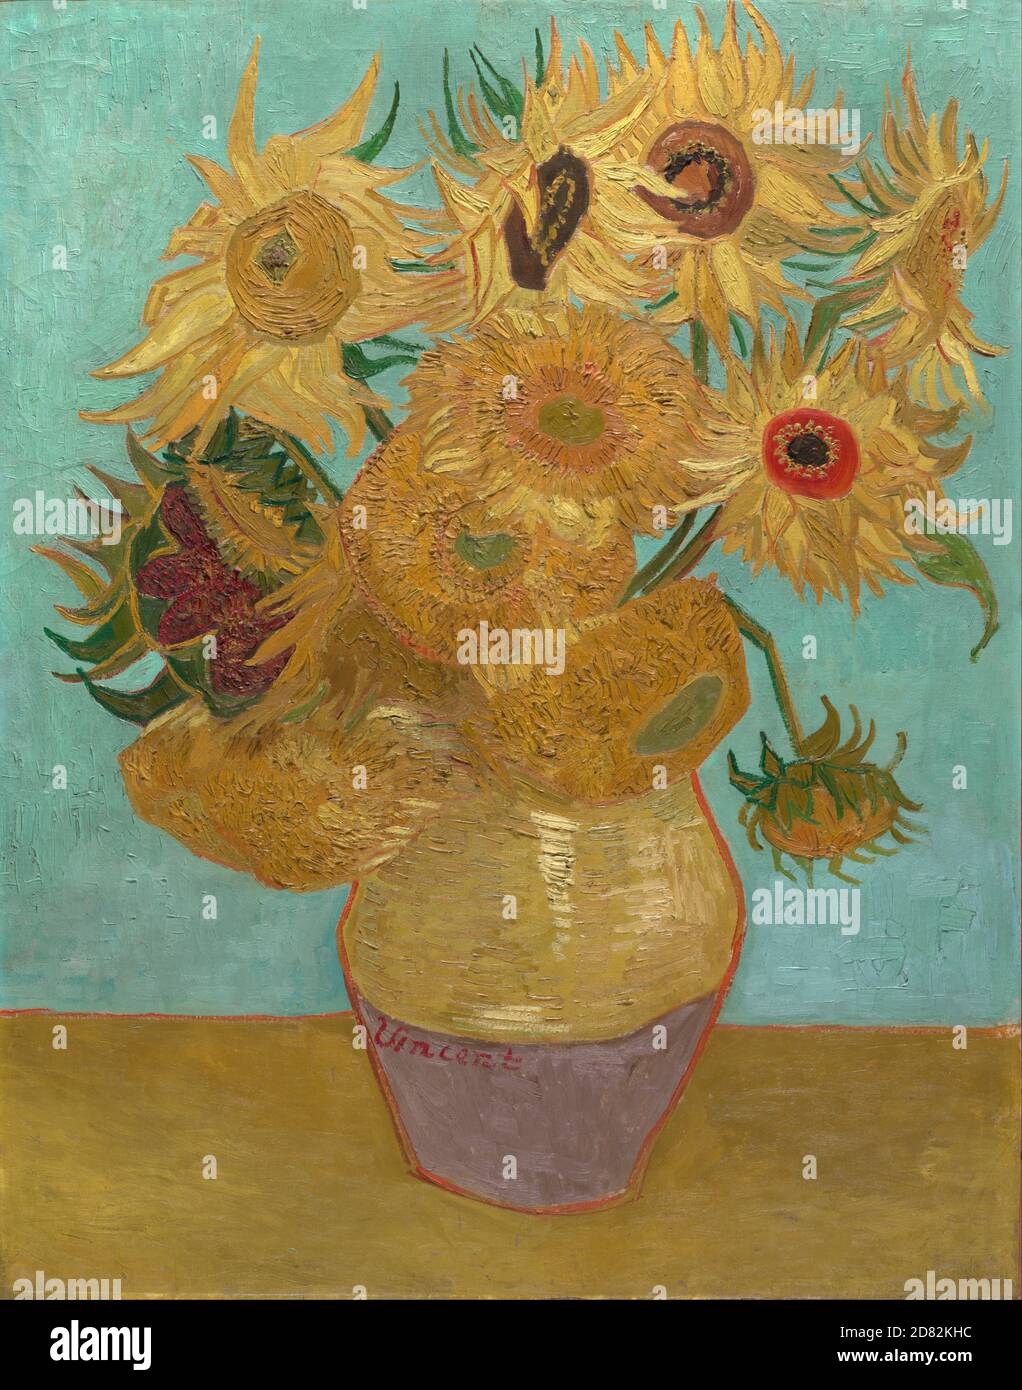 Titolo: Girasoli Creatore: Vincent van Gogh Data: 1888 Medio: Olio su tela dimensioni: 91 x 72 cm Ubicazione: Neue Pinakothek, Monaco di Baviera, Germania Foto Stock